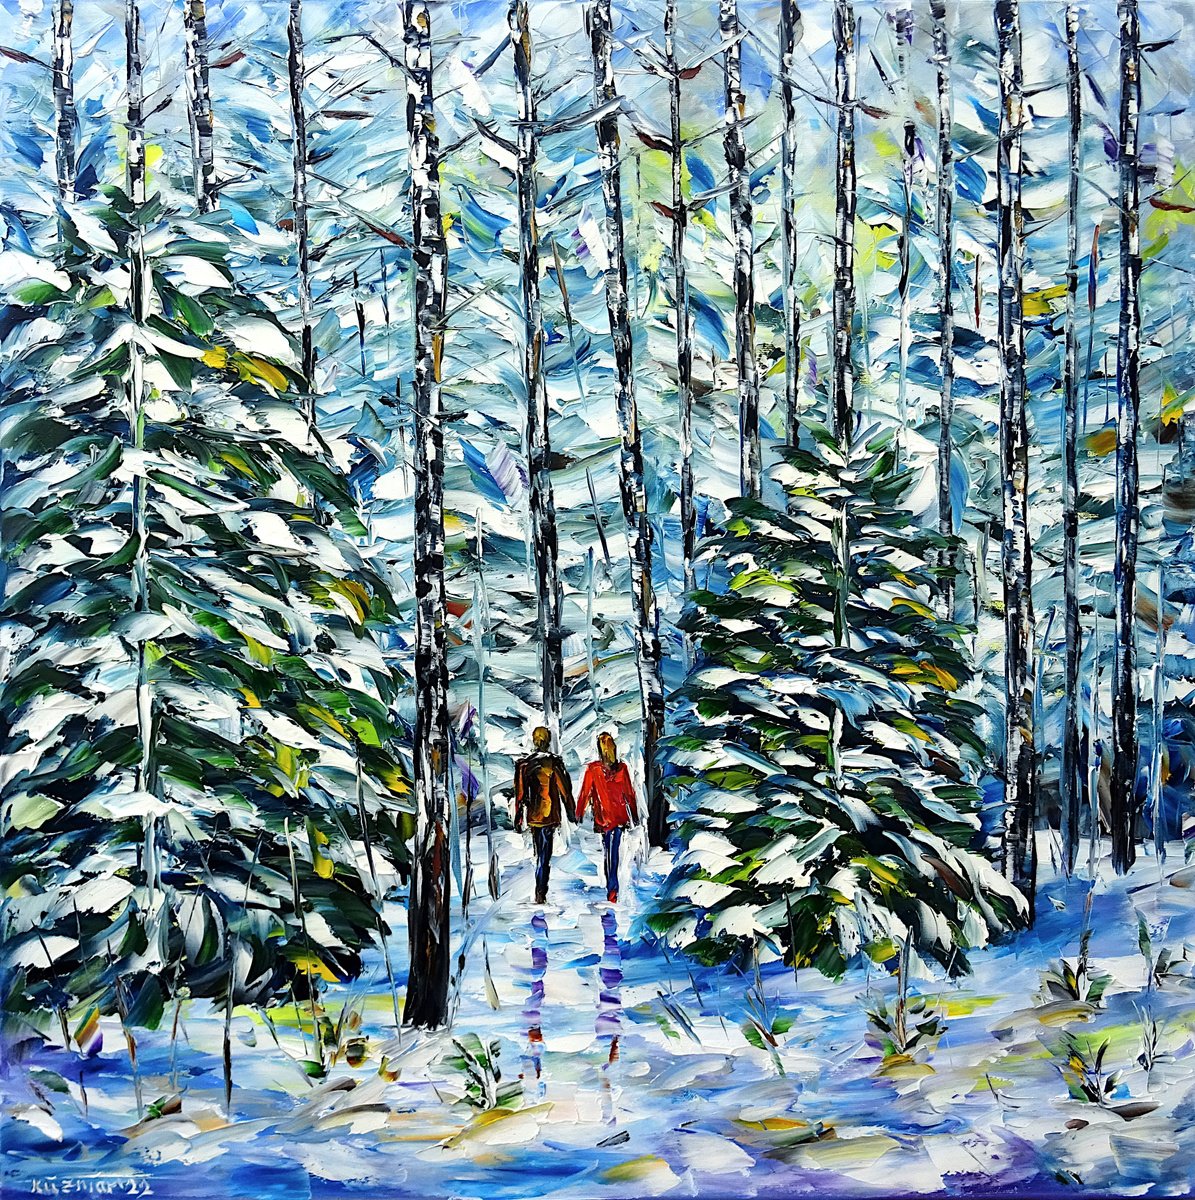 In the winter forest by Mirek Kuzniar